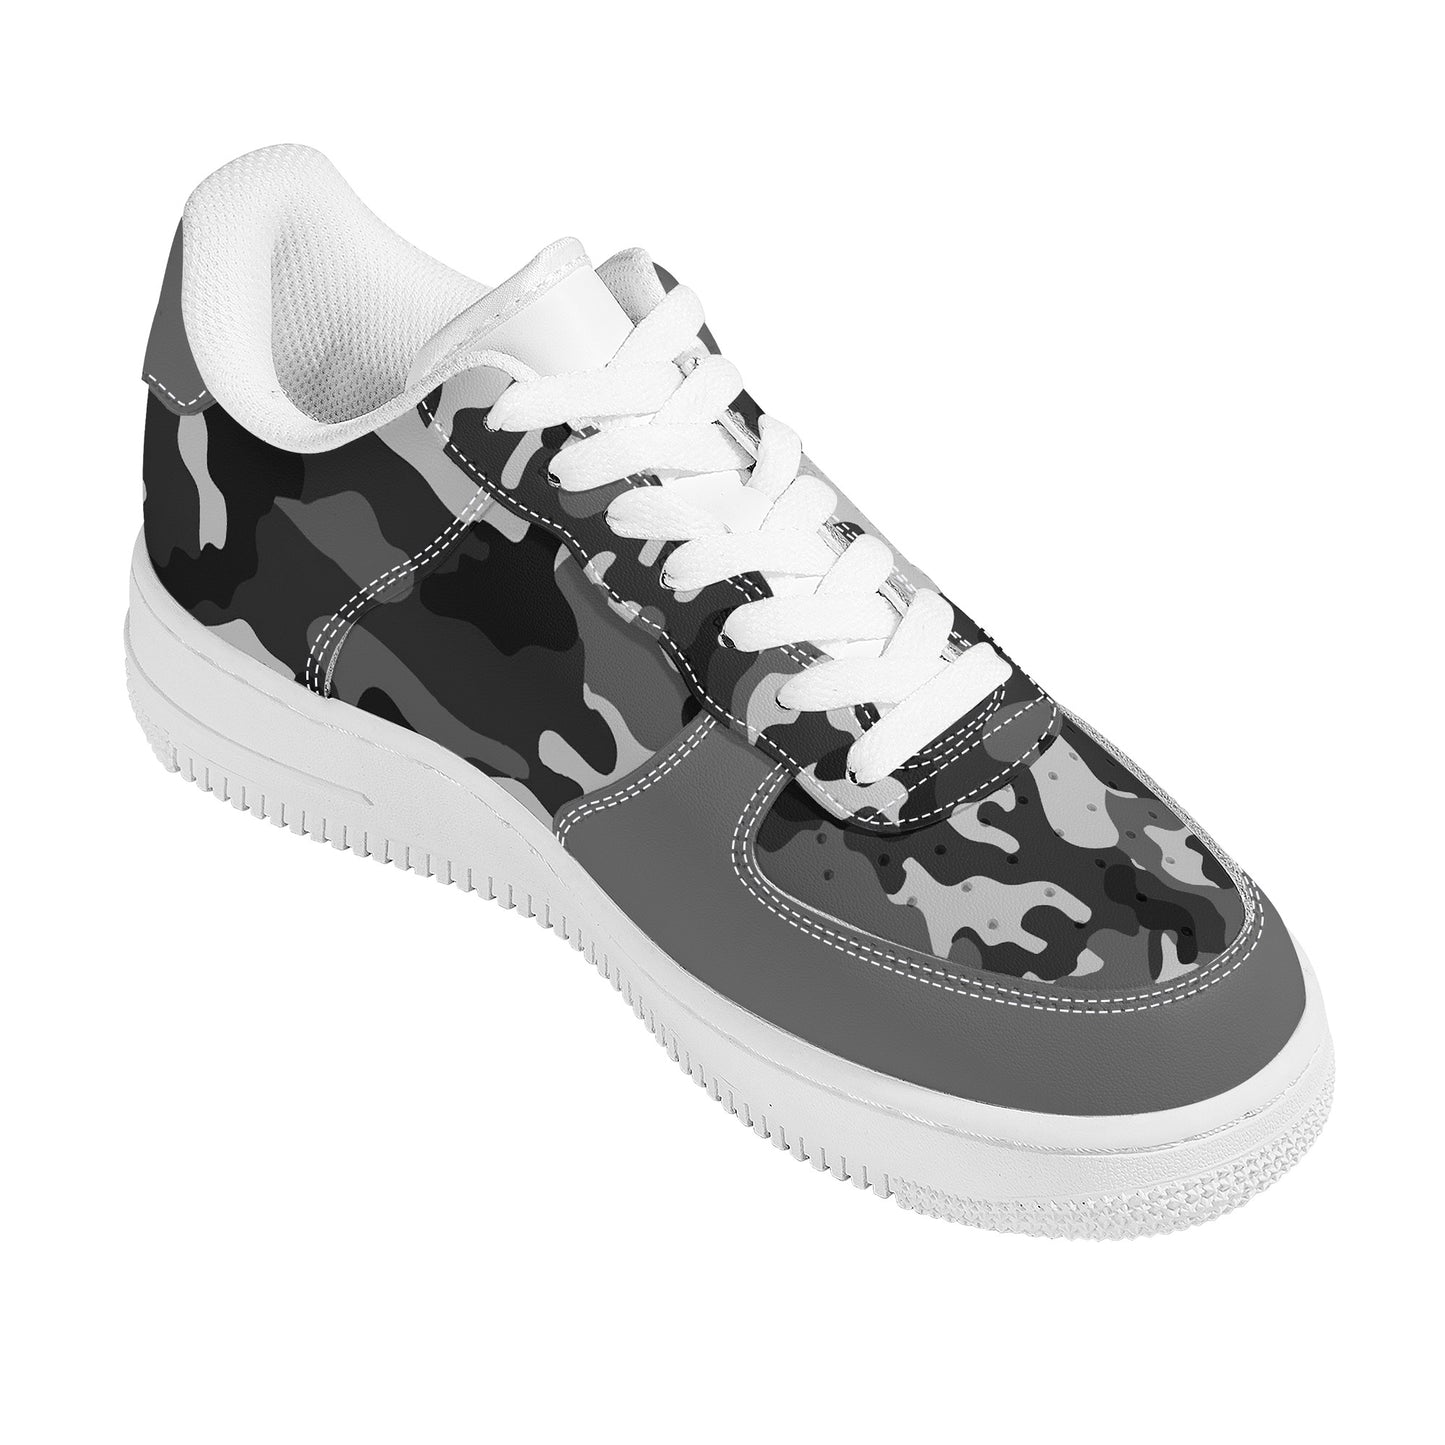 Low Top Unisex Sneaker - Grey